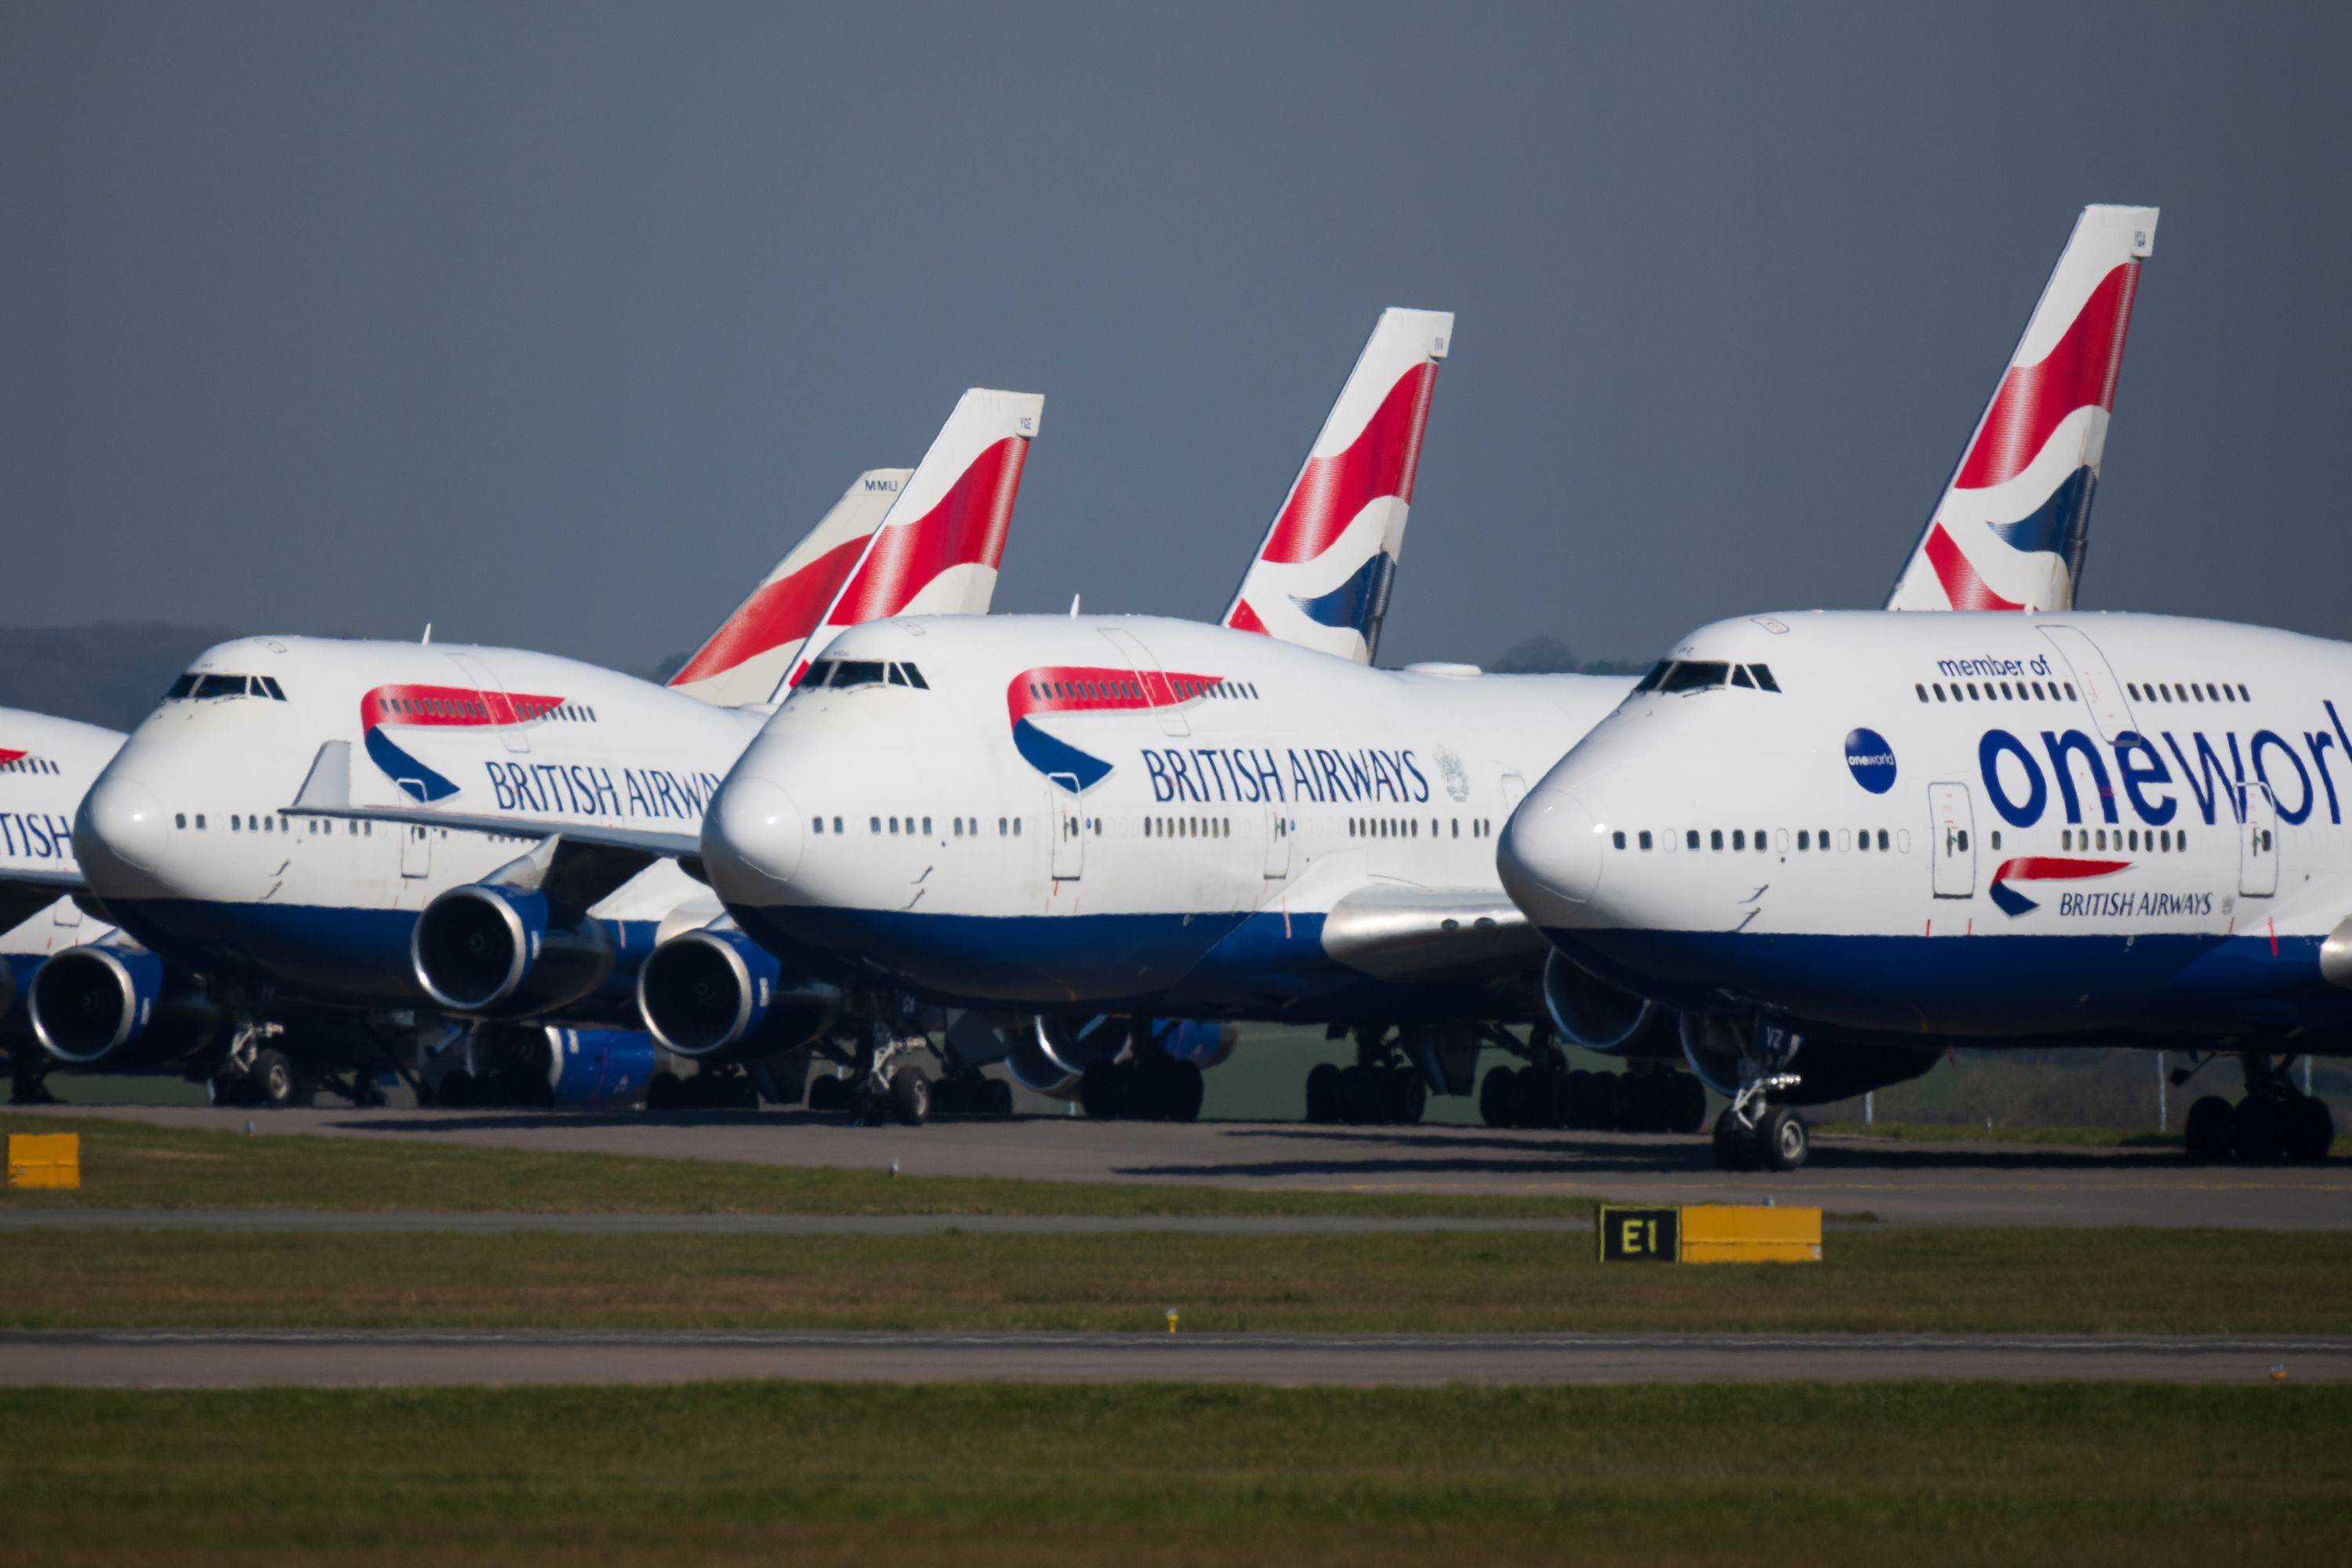 Бритиш эйрвейз авиакомпания - официальный сайт british airways, контакты, авиабилеты и расписание рейсов британские авиалинии 2021